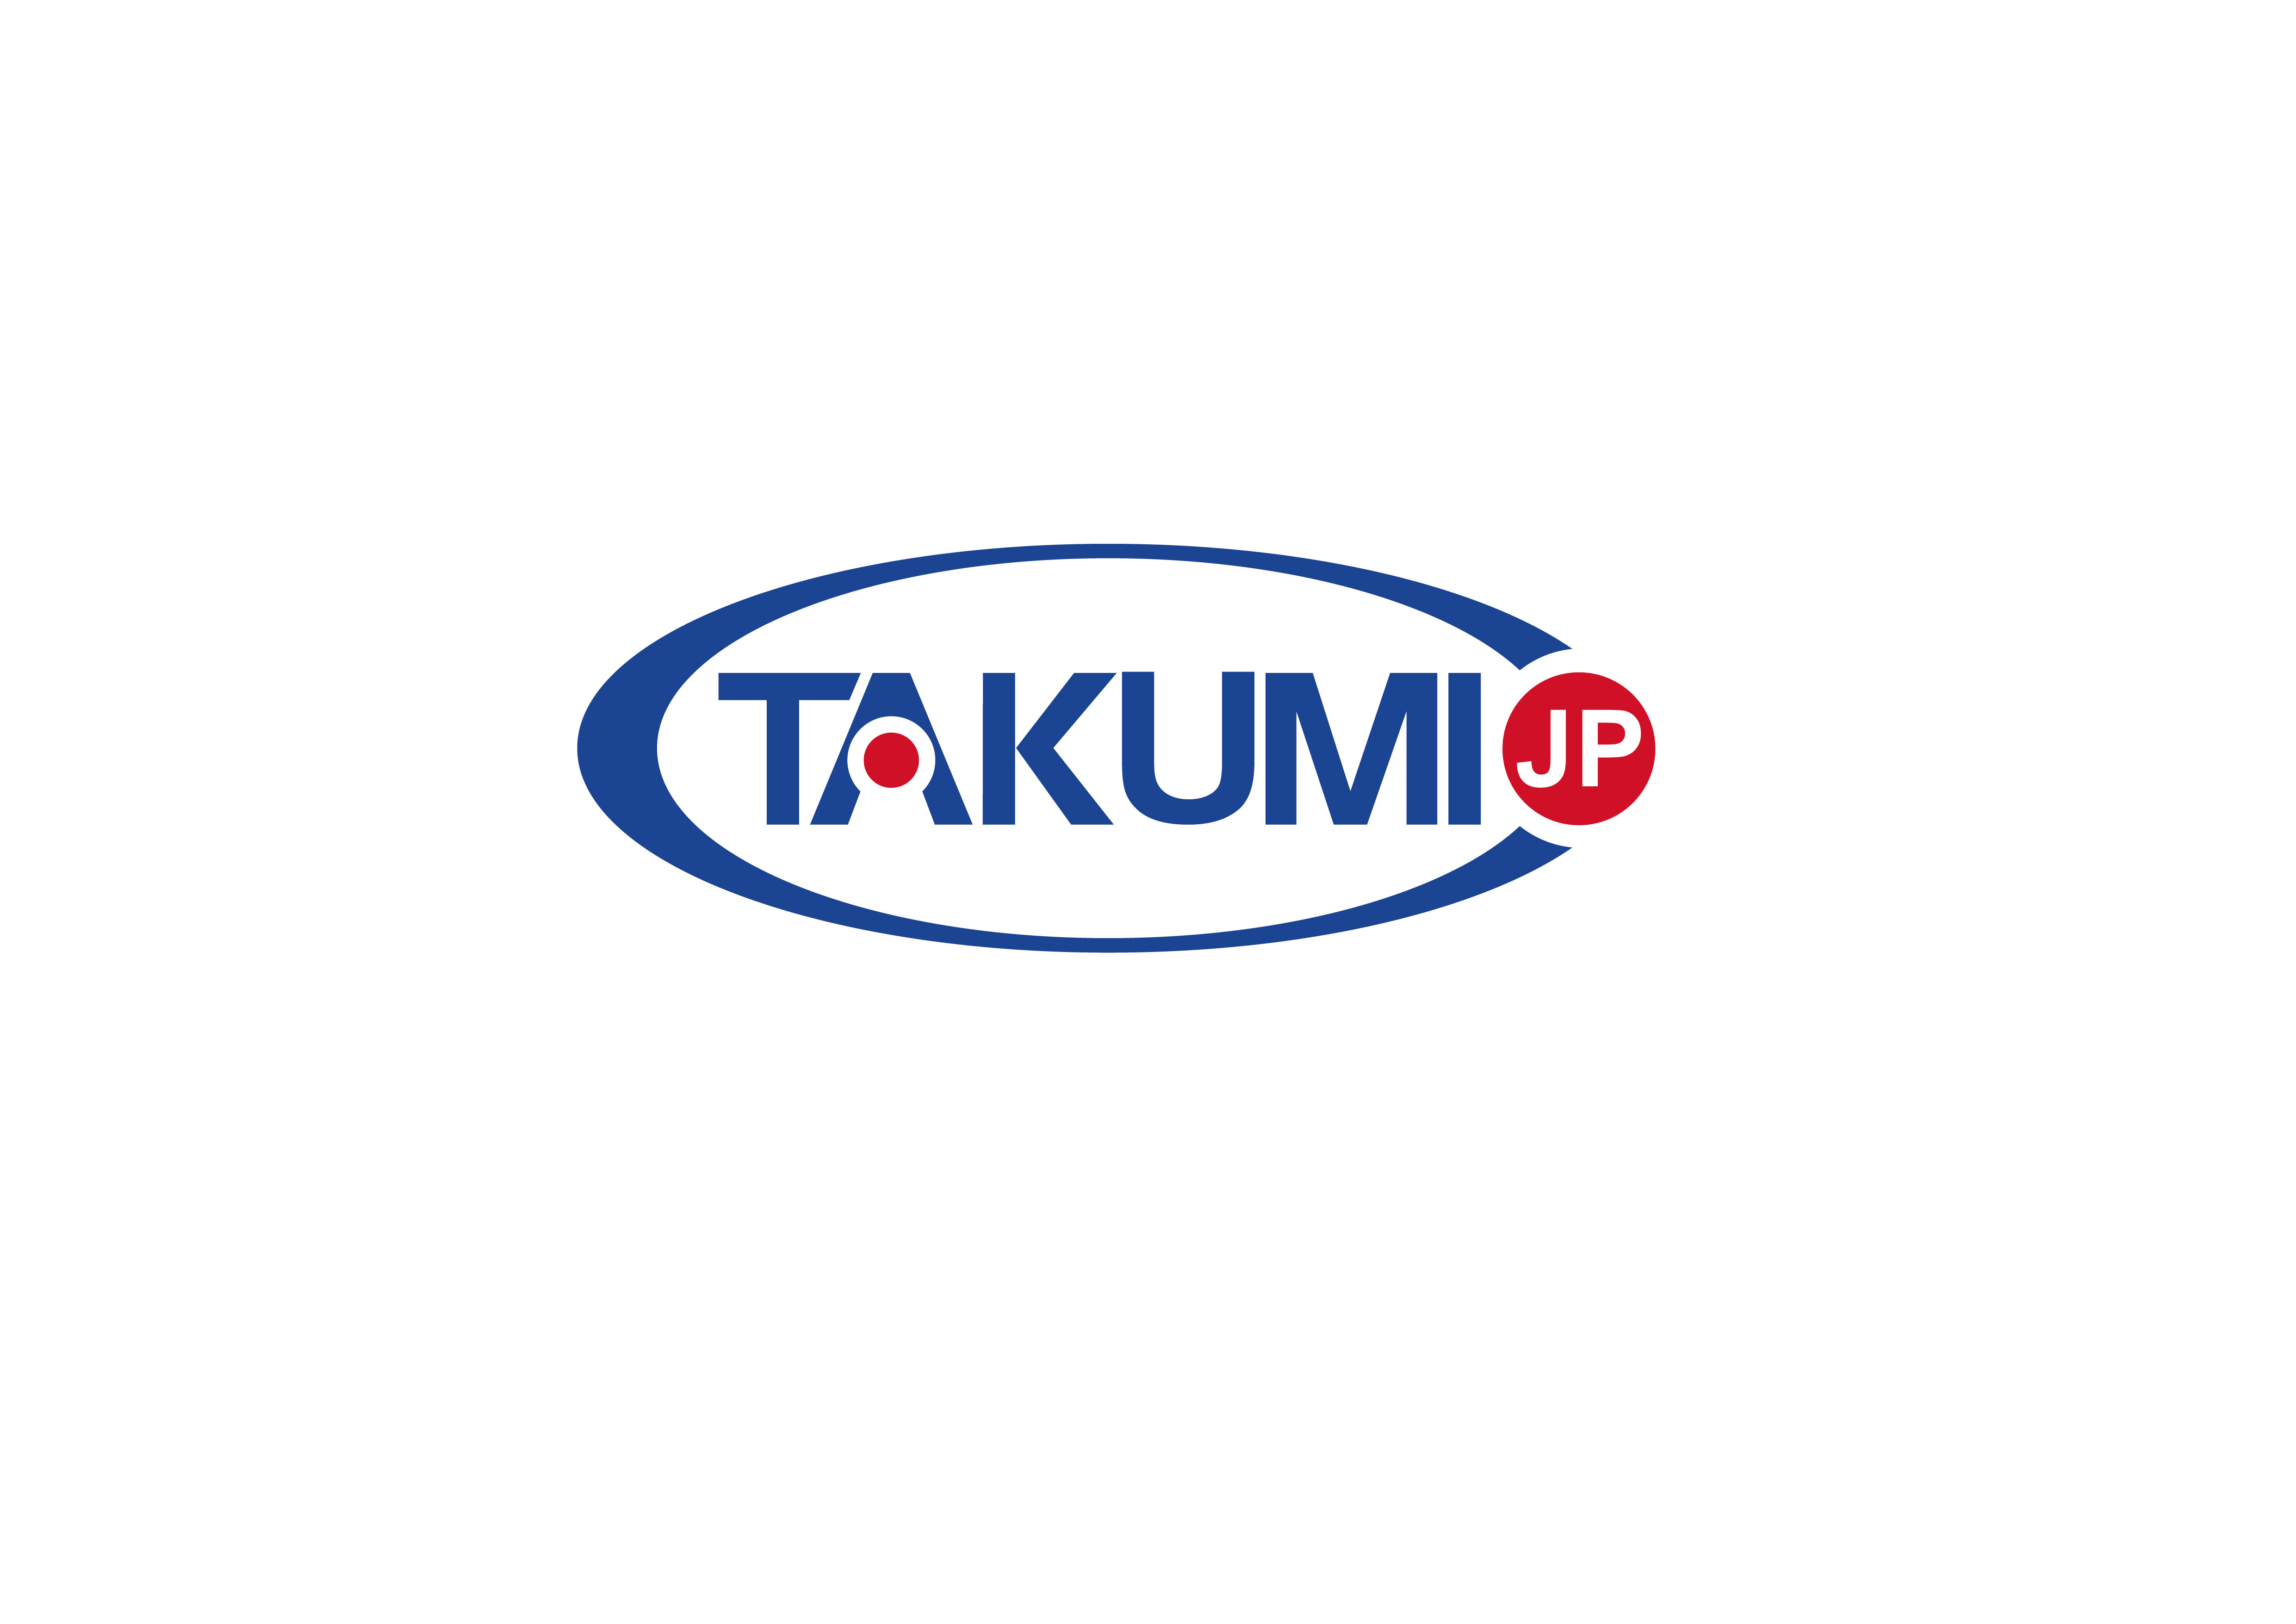 أحدث حالة شركة حول Takumi يبحث الآن عن موزع حصري عالمي.